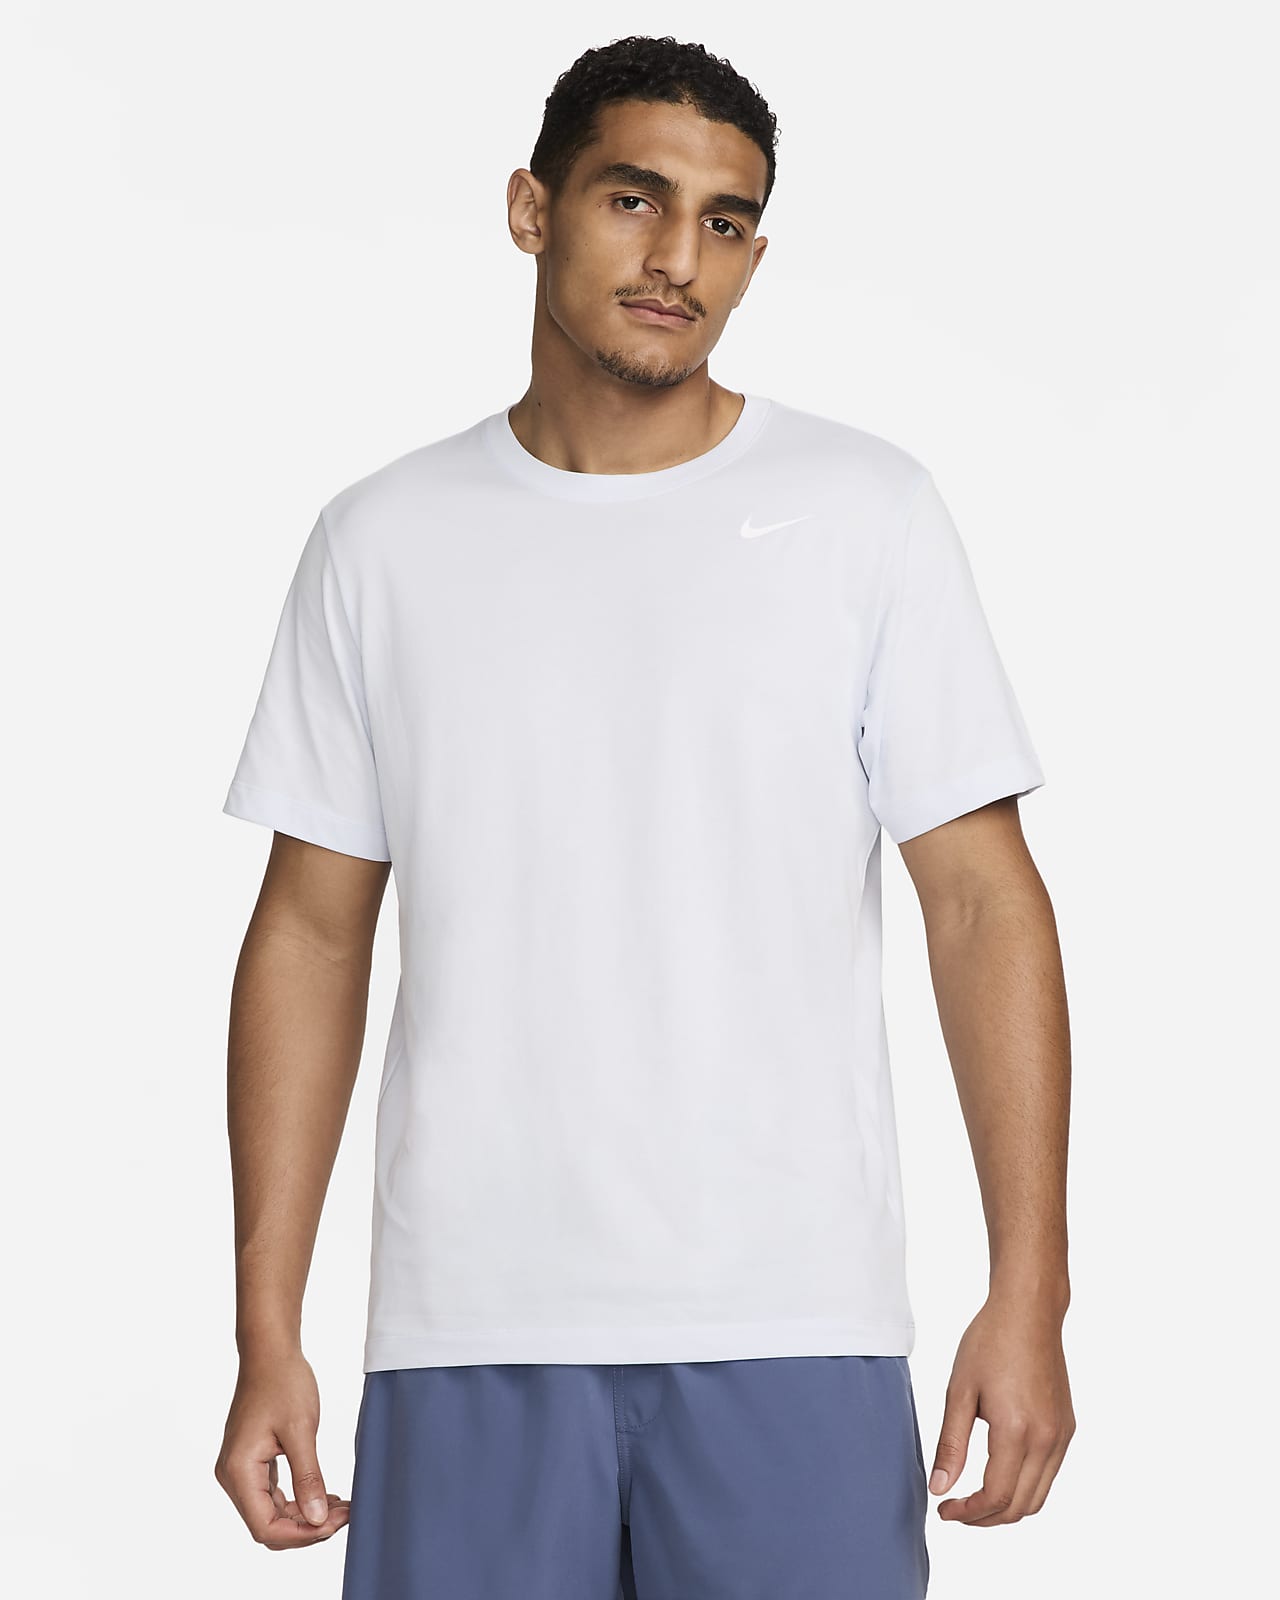 Nike Dri-FIT Men's Fitness T-Shirt. Nike LU